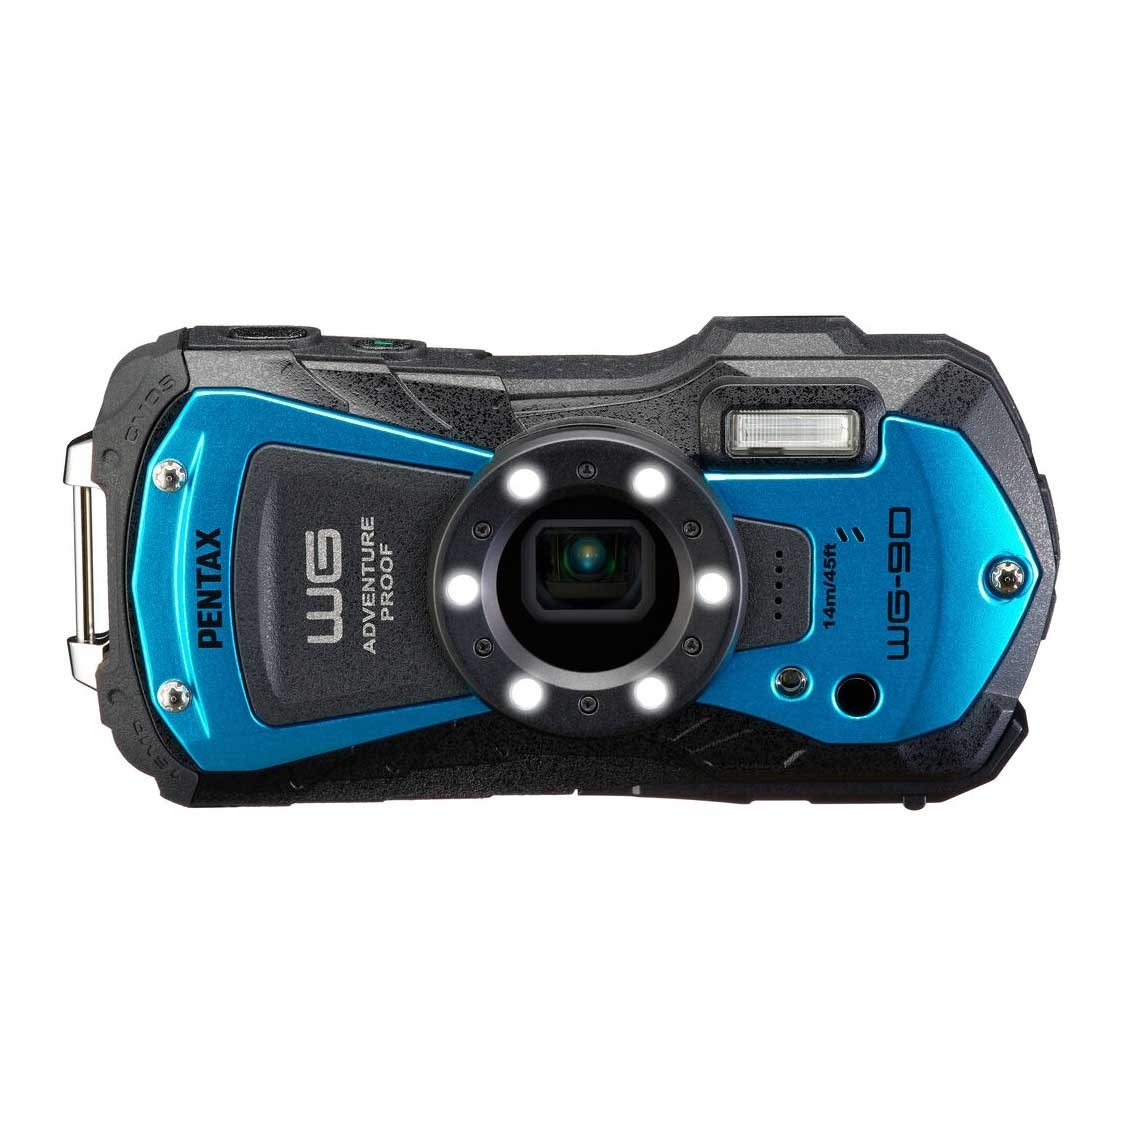 Pentax WG-90 Waterproof Camera (blue)